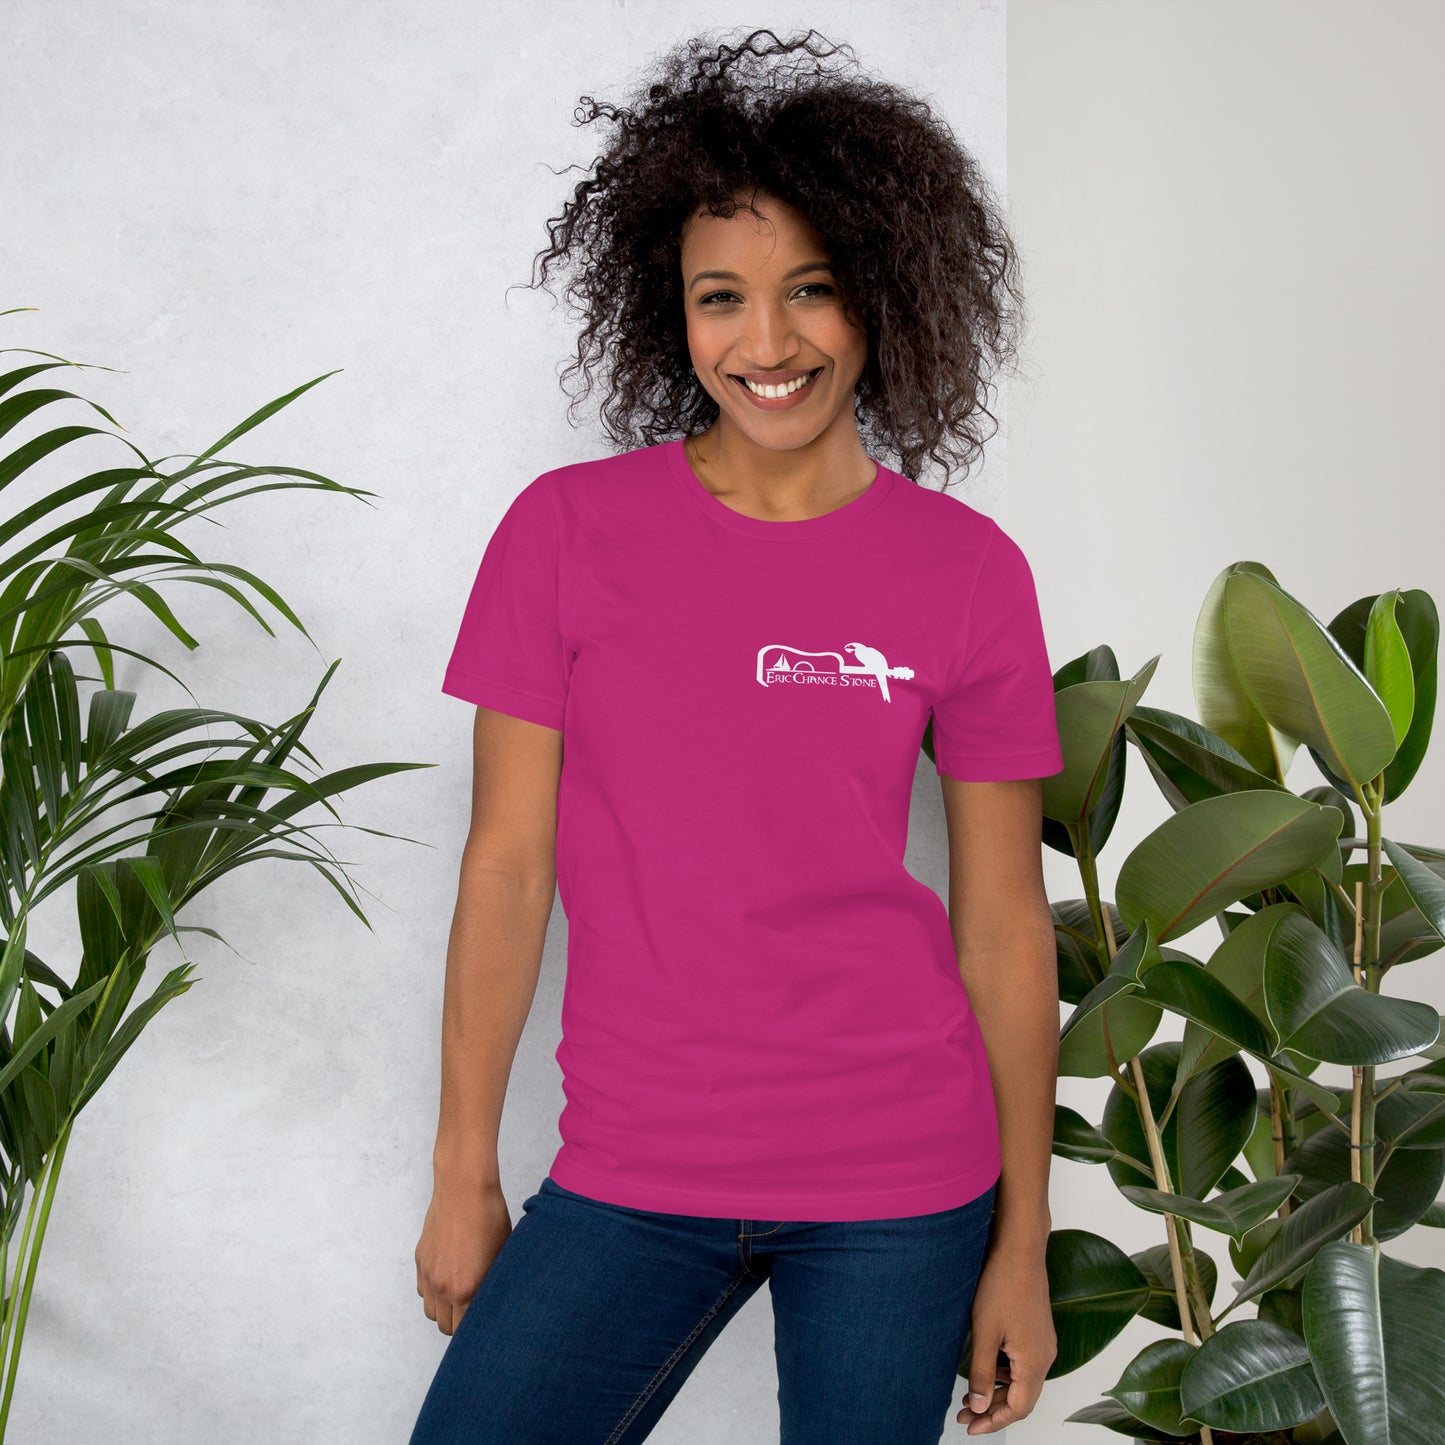 Manatee & The JellyFIsh - Women's T-Shirt - Darker Colors